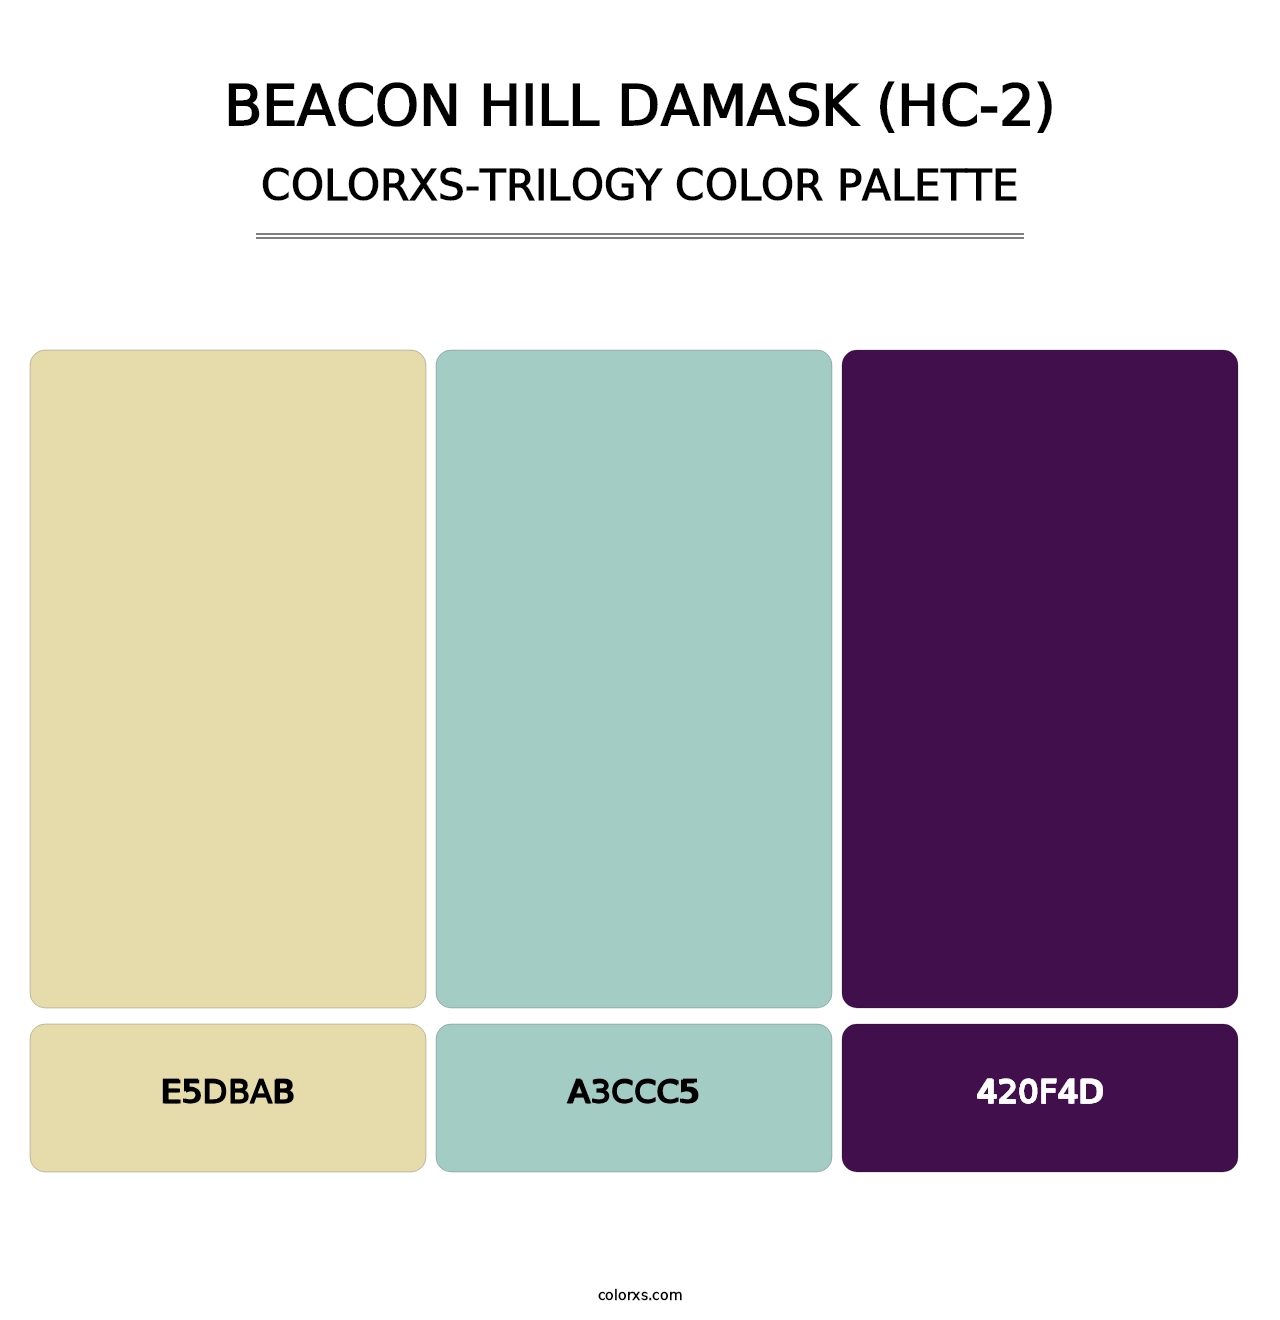 Beacon Hill Damask (HC-2) - Colorxs Trilogy Palette